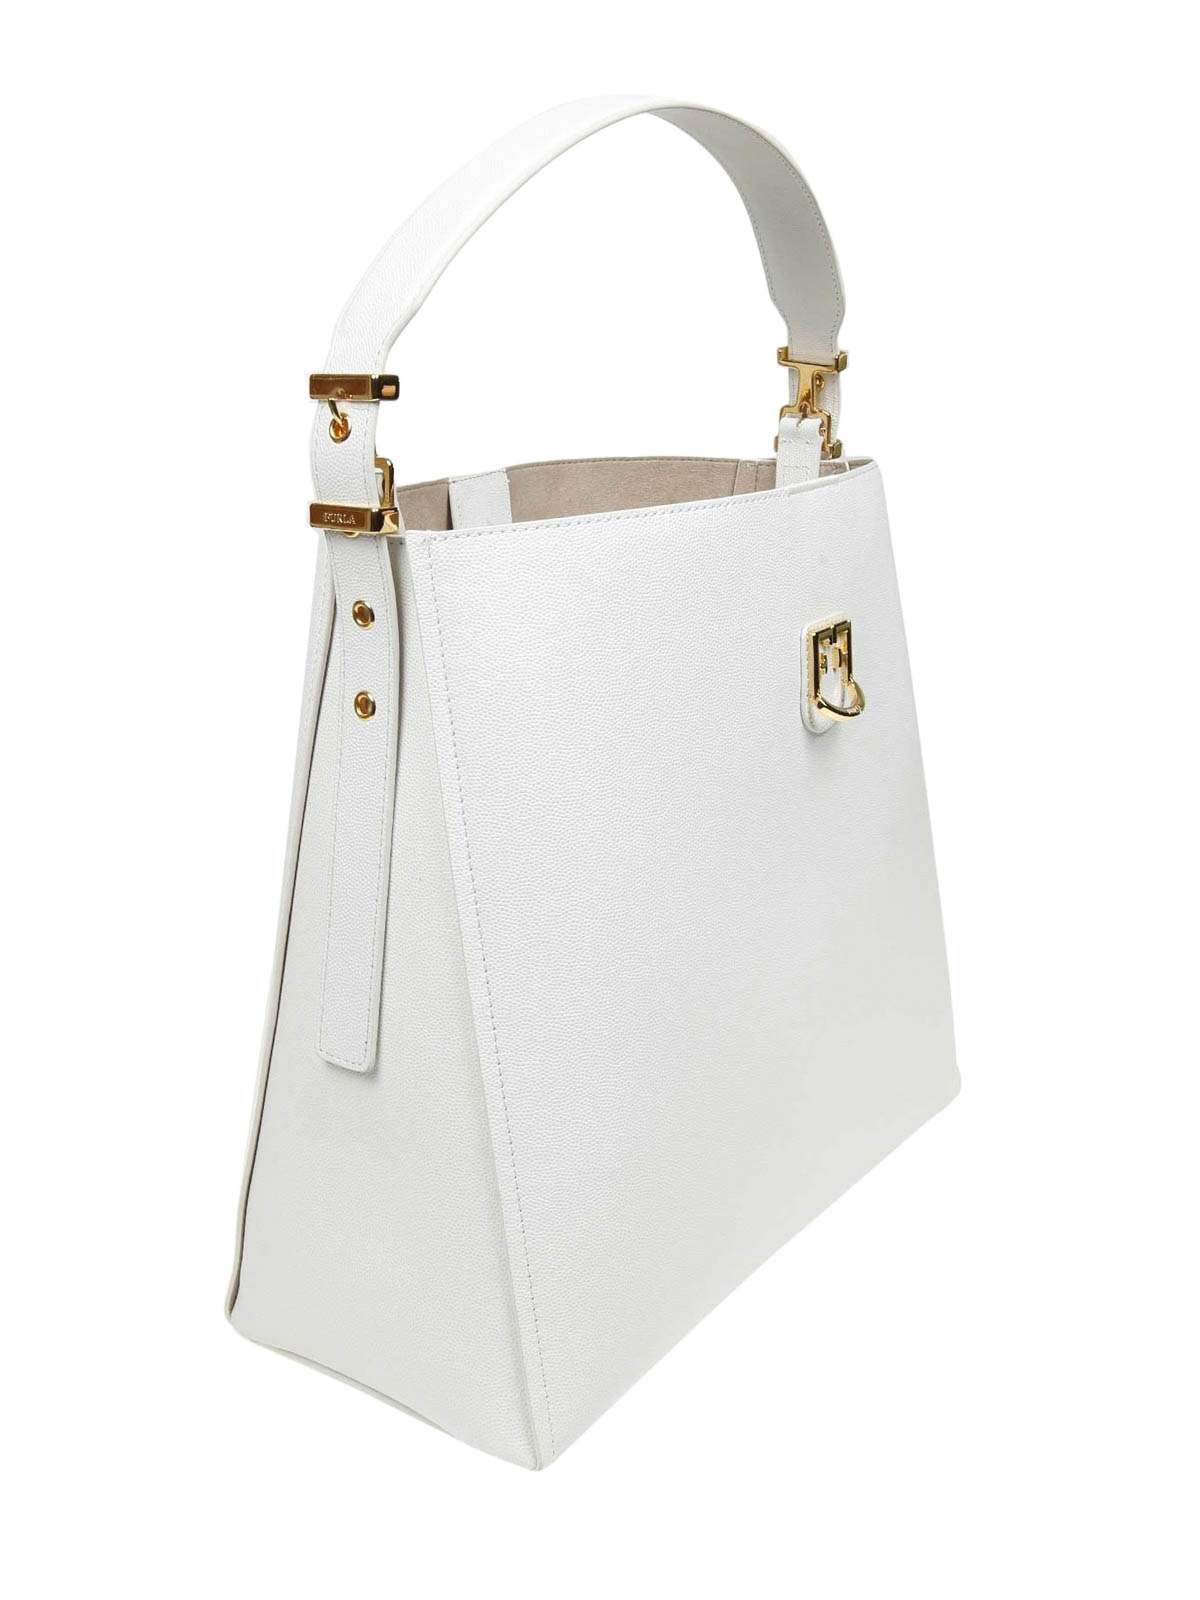 Shoulder bags Furla - Belvedere M shoulder bag in white leather - 1008049